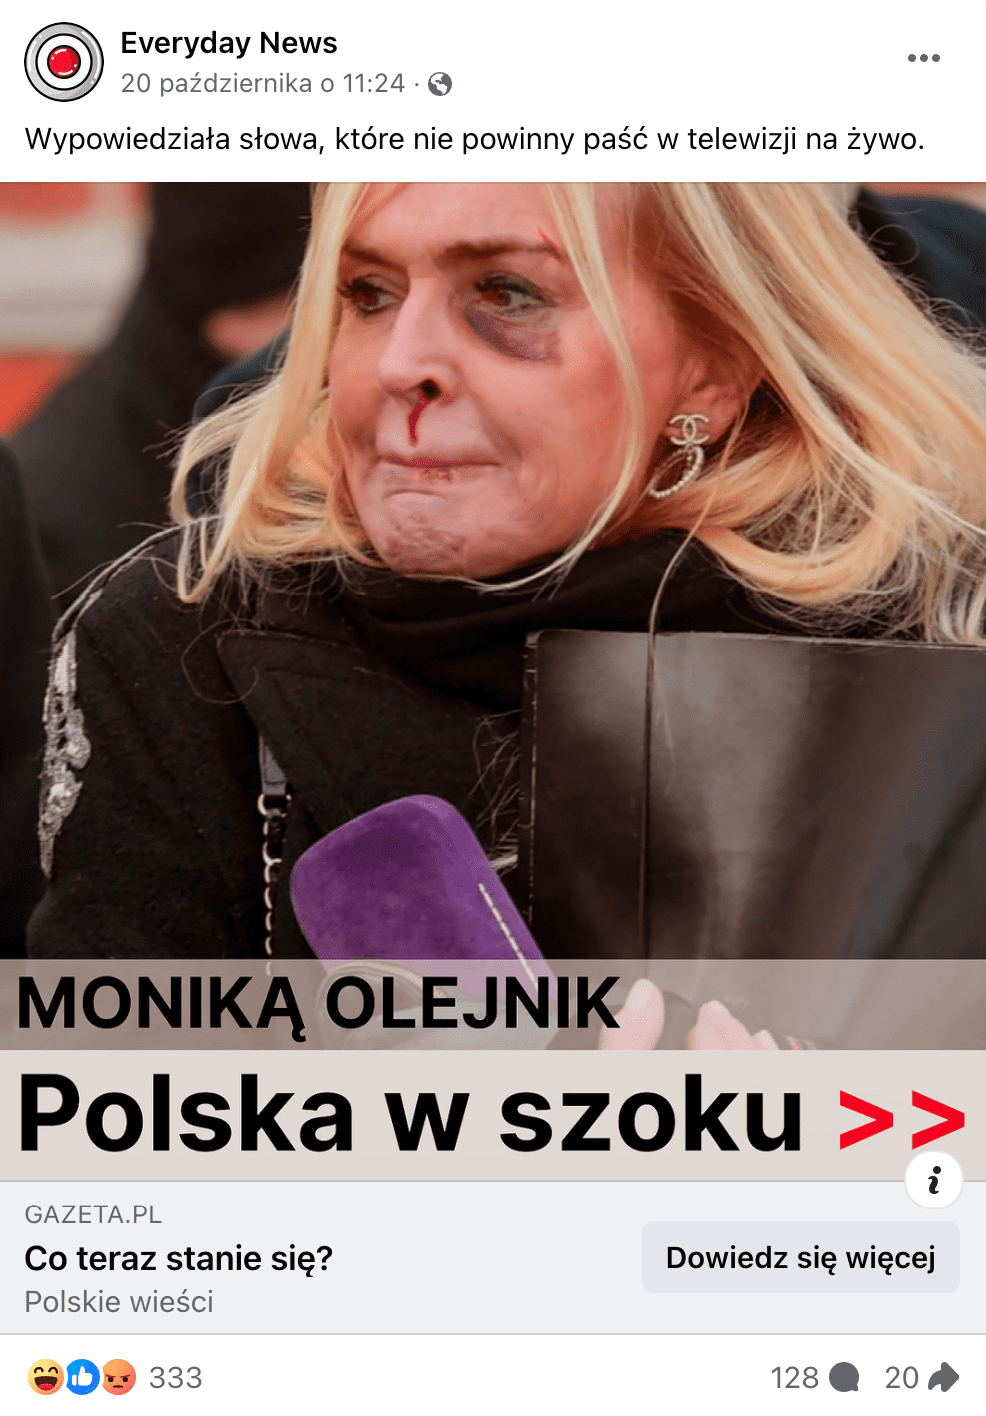 Zrzut ekranu jednego z omawianych postów. Widoczna jest Monika Olejnik z ranami na twarzy.